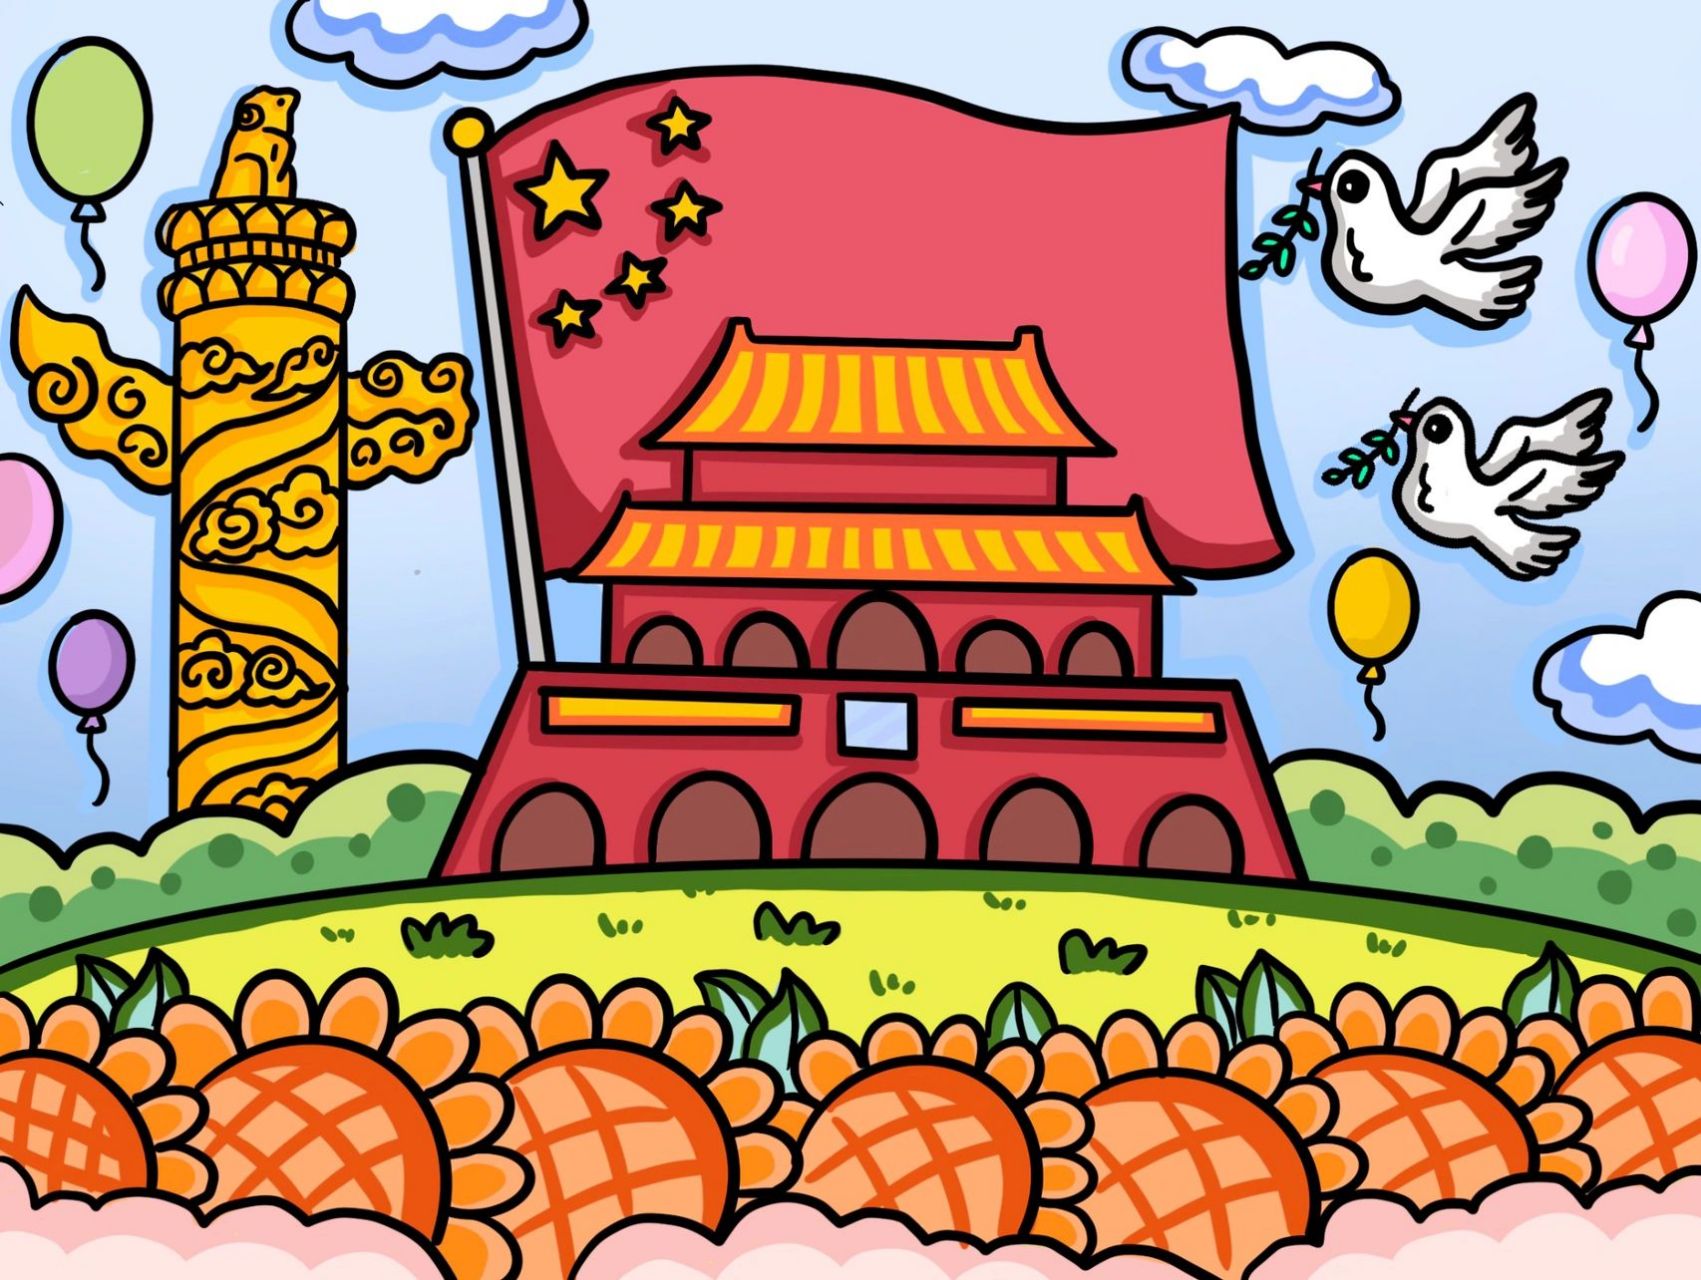 国庆节绘画 插图图片